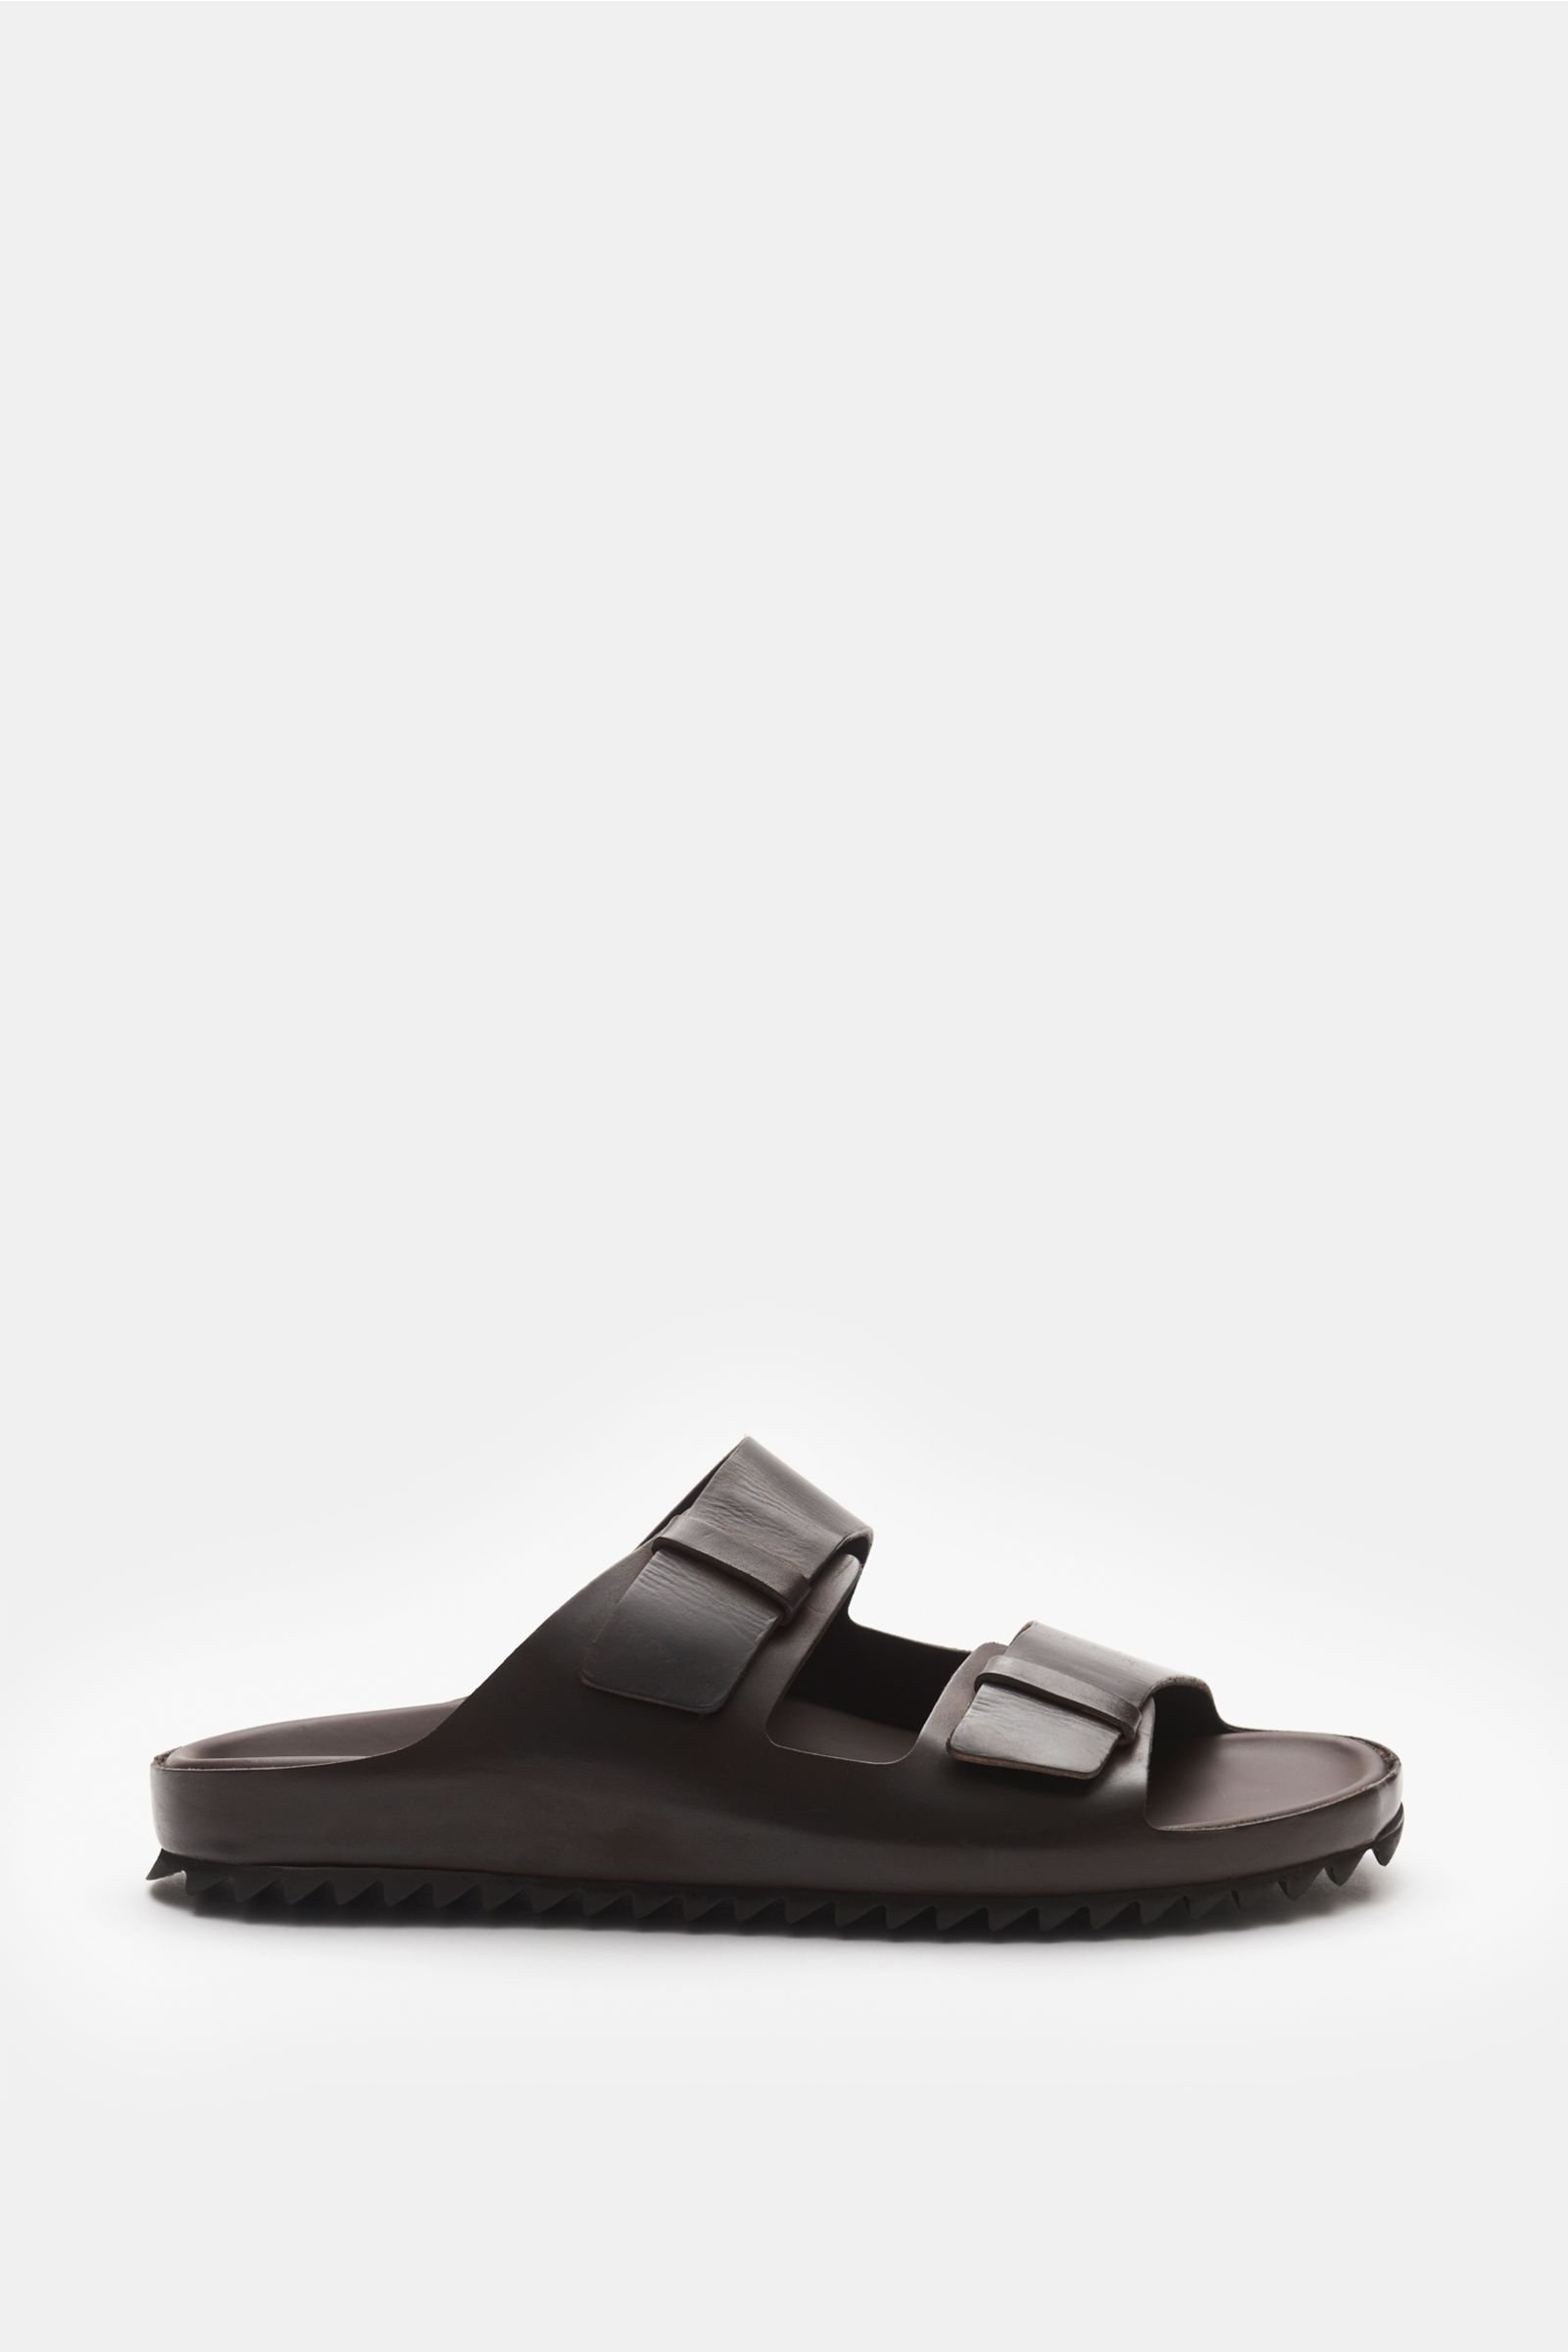 Slip-on sandals 'Agora 002' dark brown